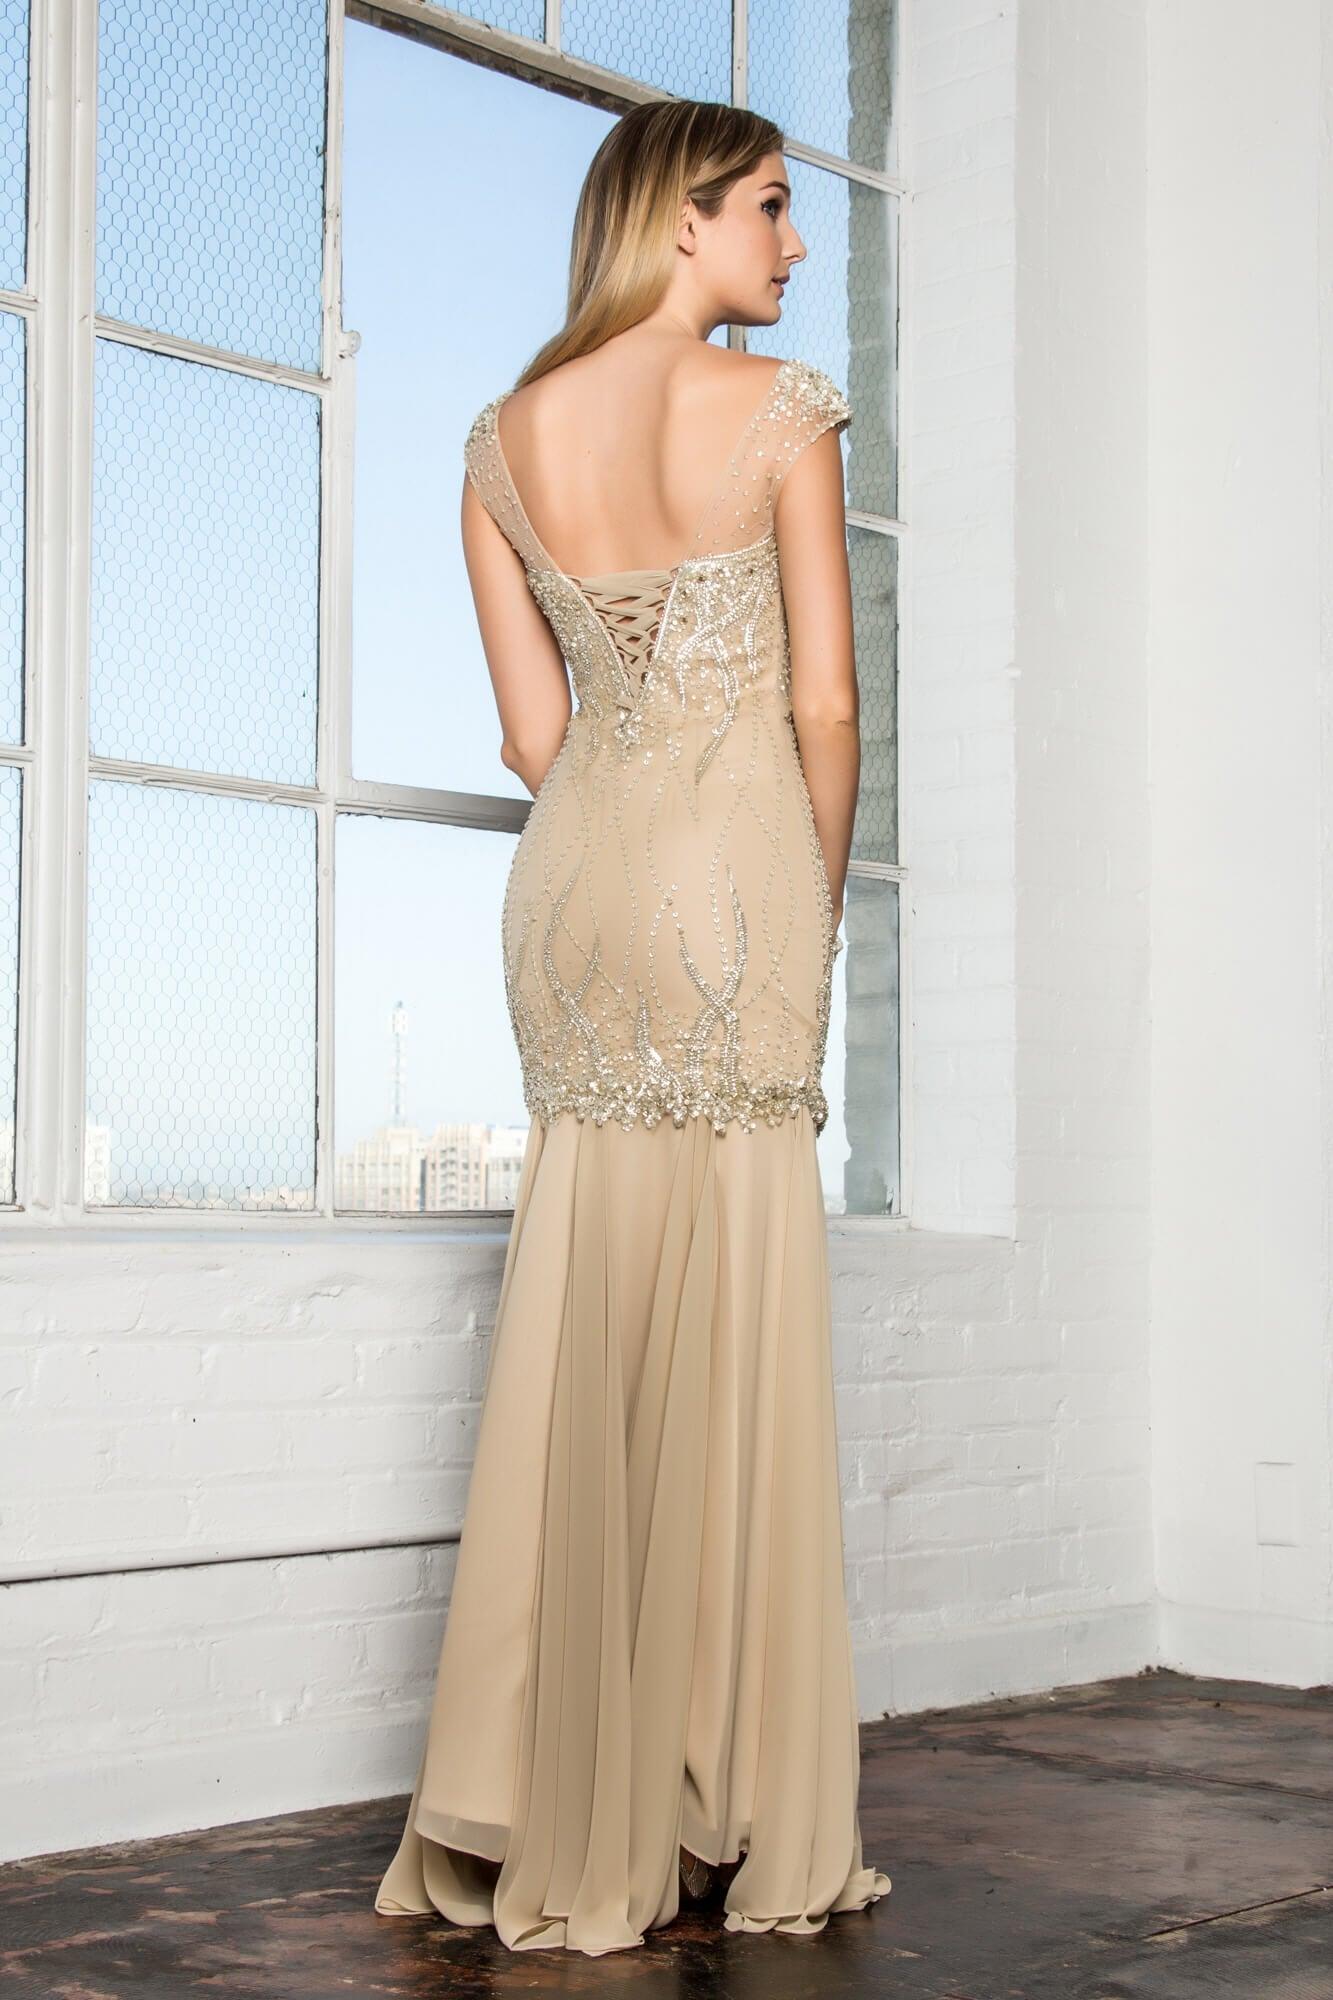 Prom Fitted Long Dress Formal - The Dress Outlet Elizabeth K